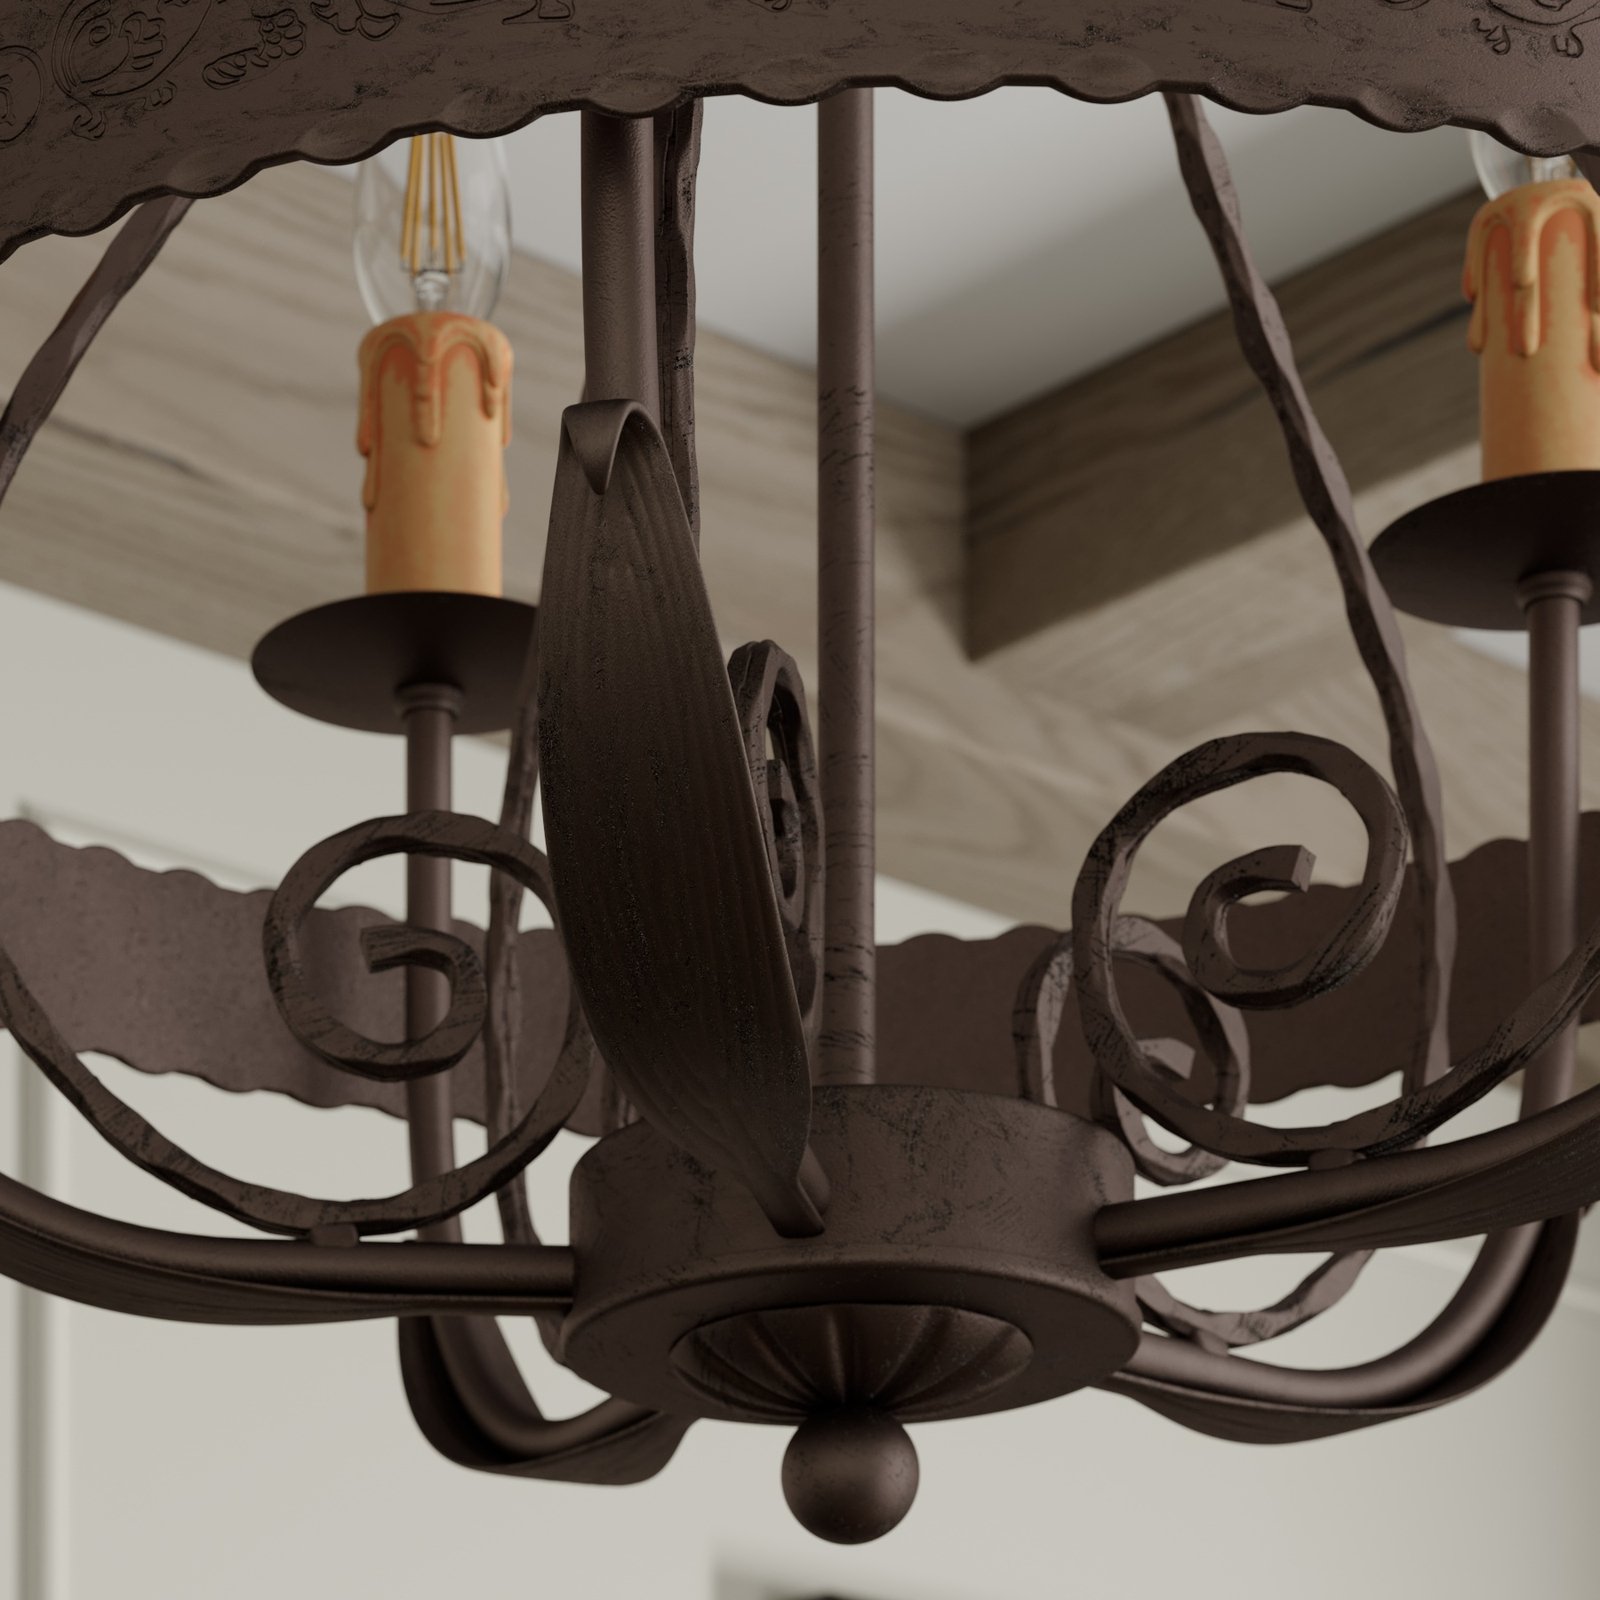 Loara chandelier, 5-bulb